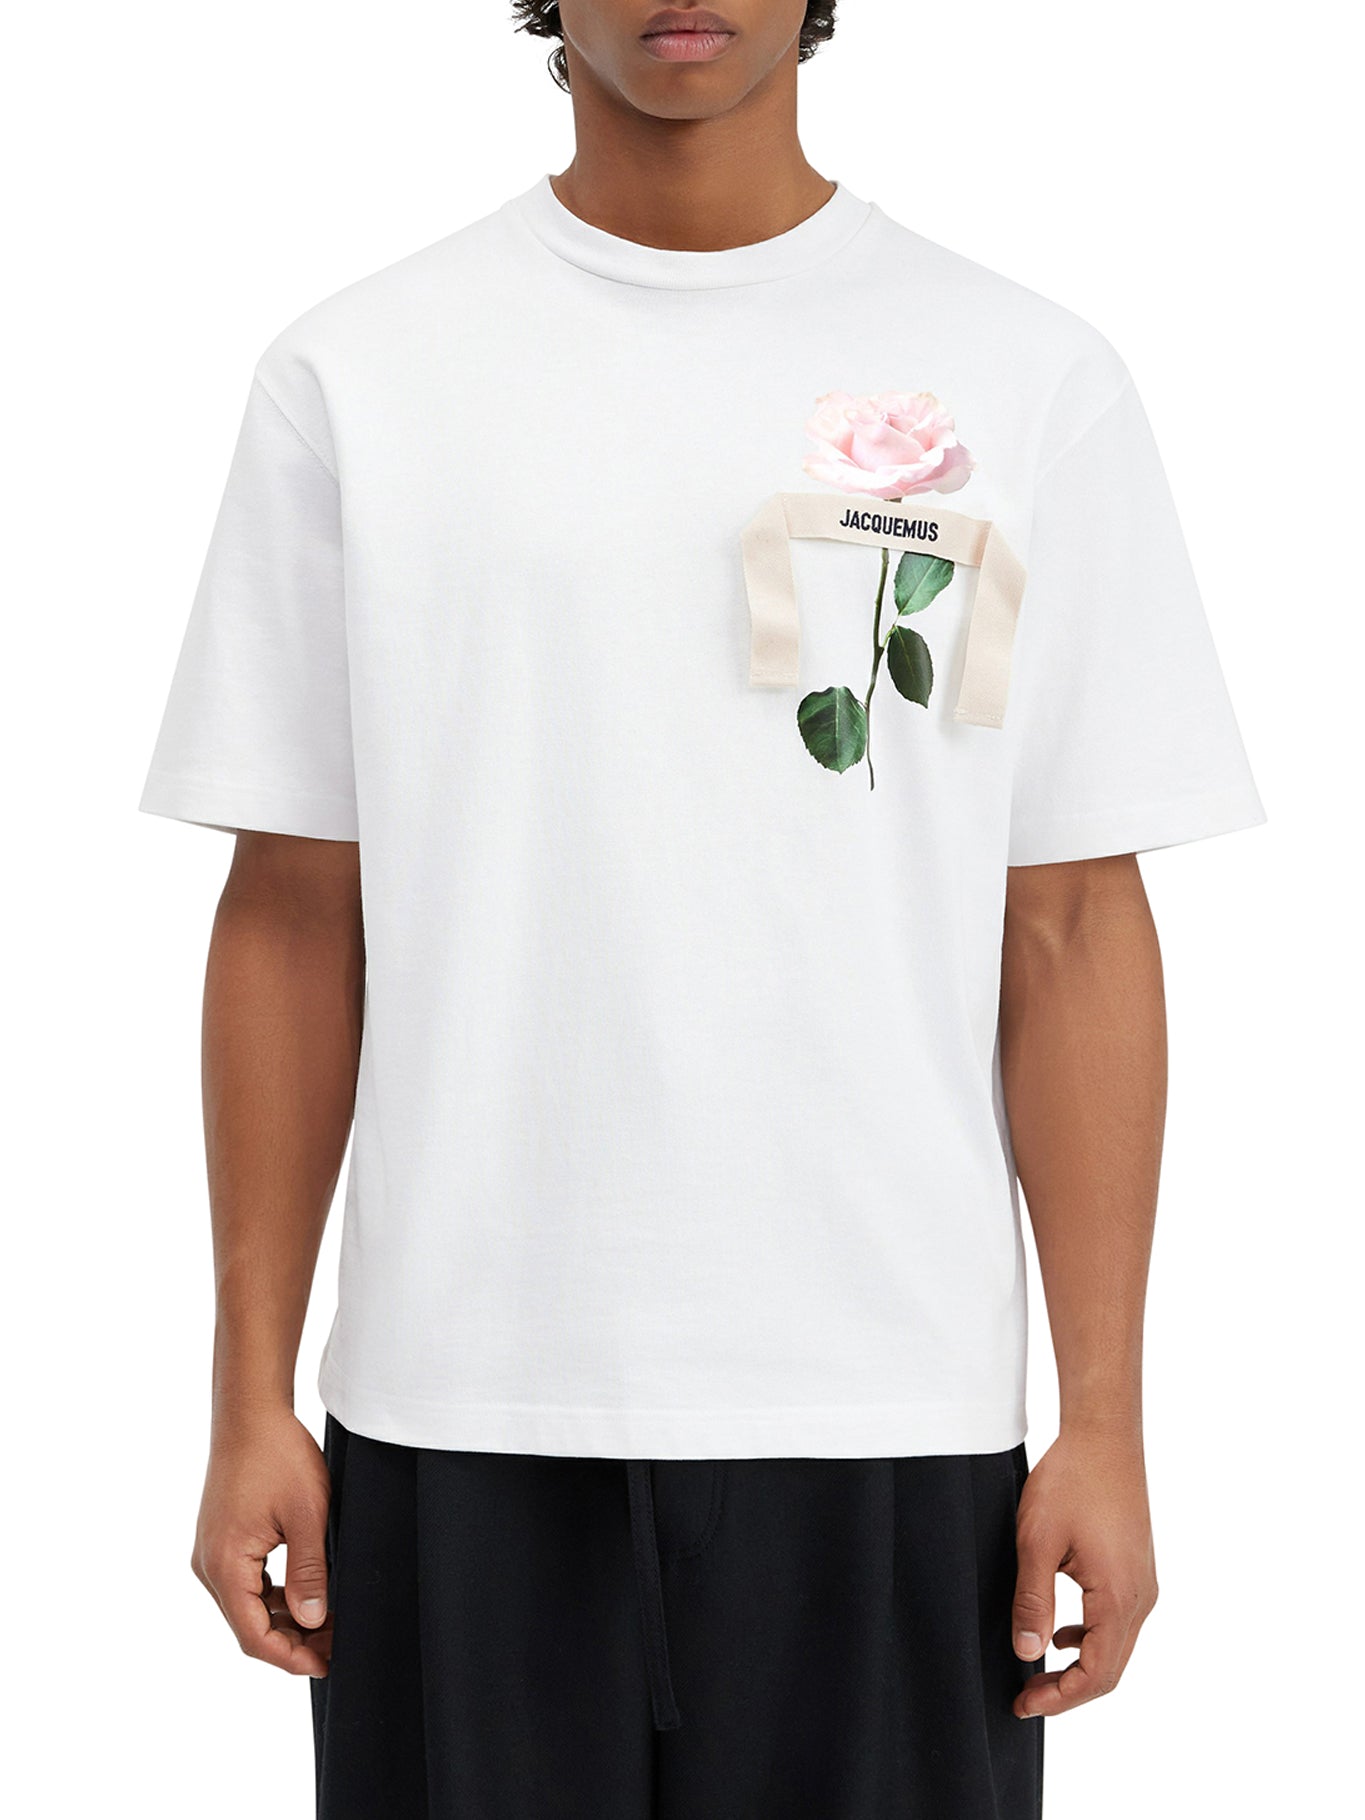 Le t-shirt Rose